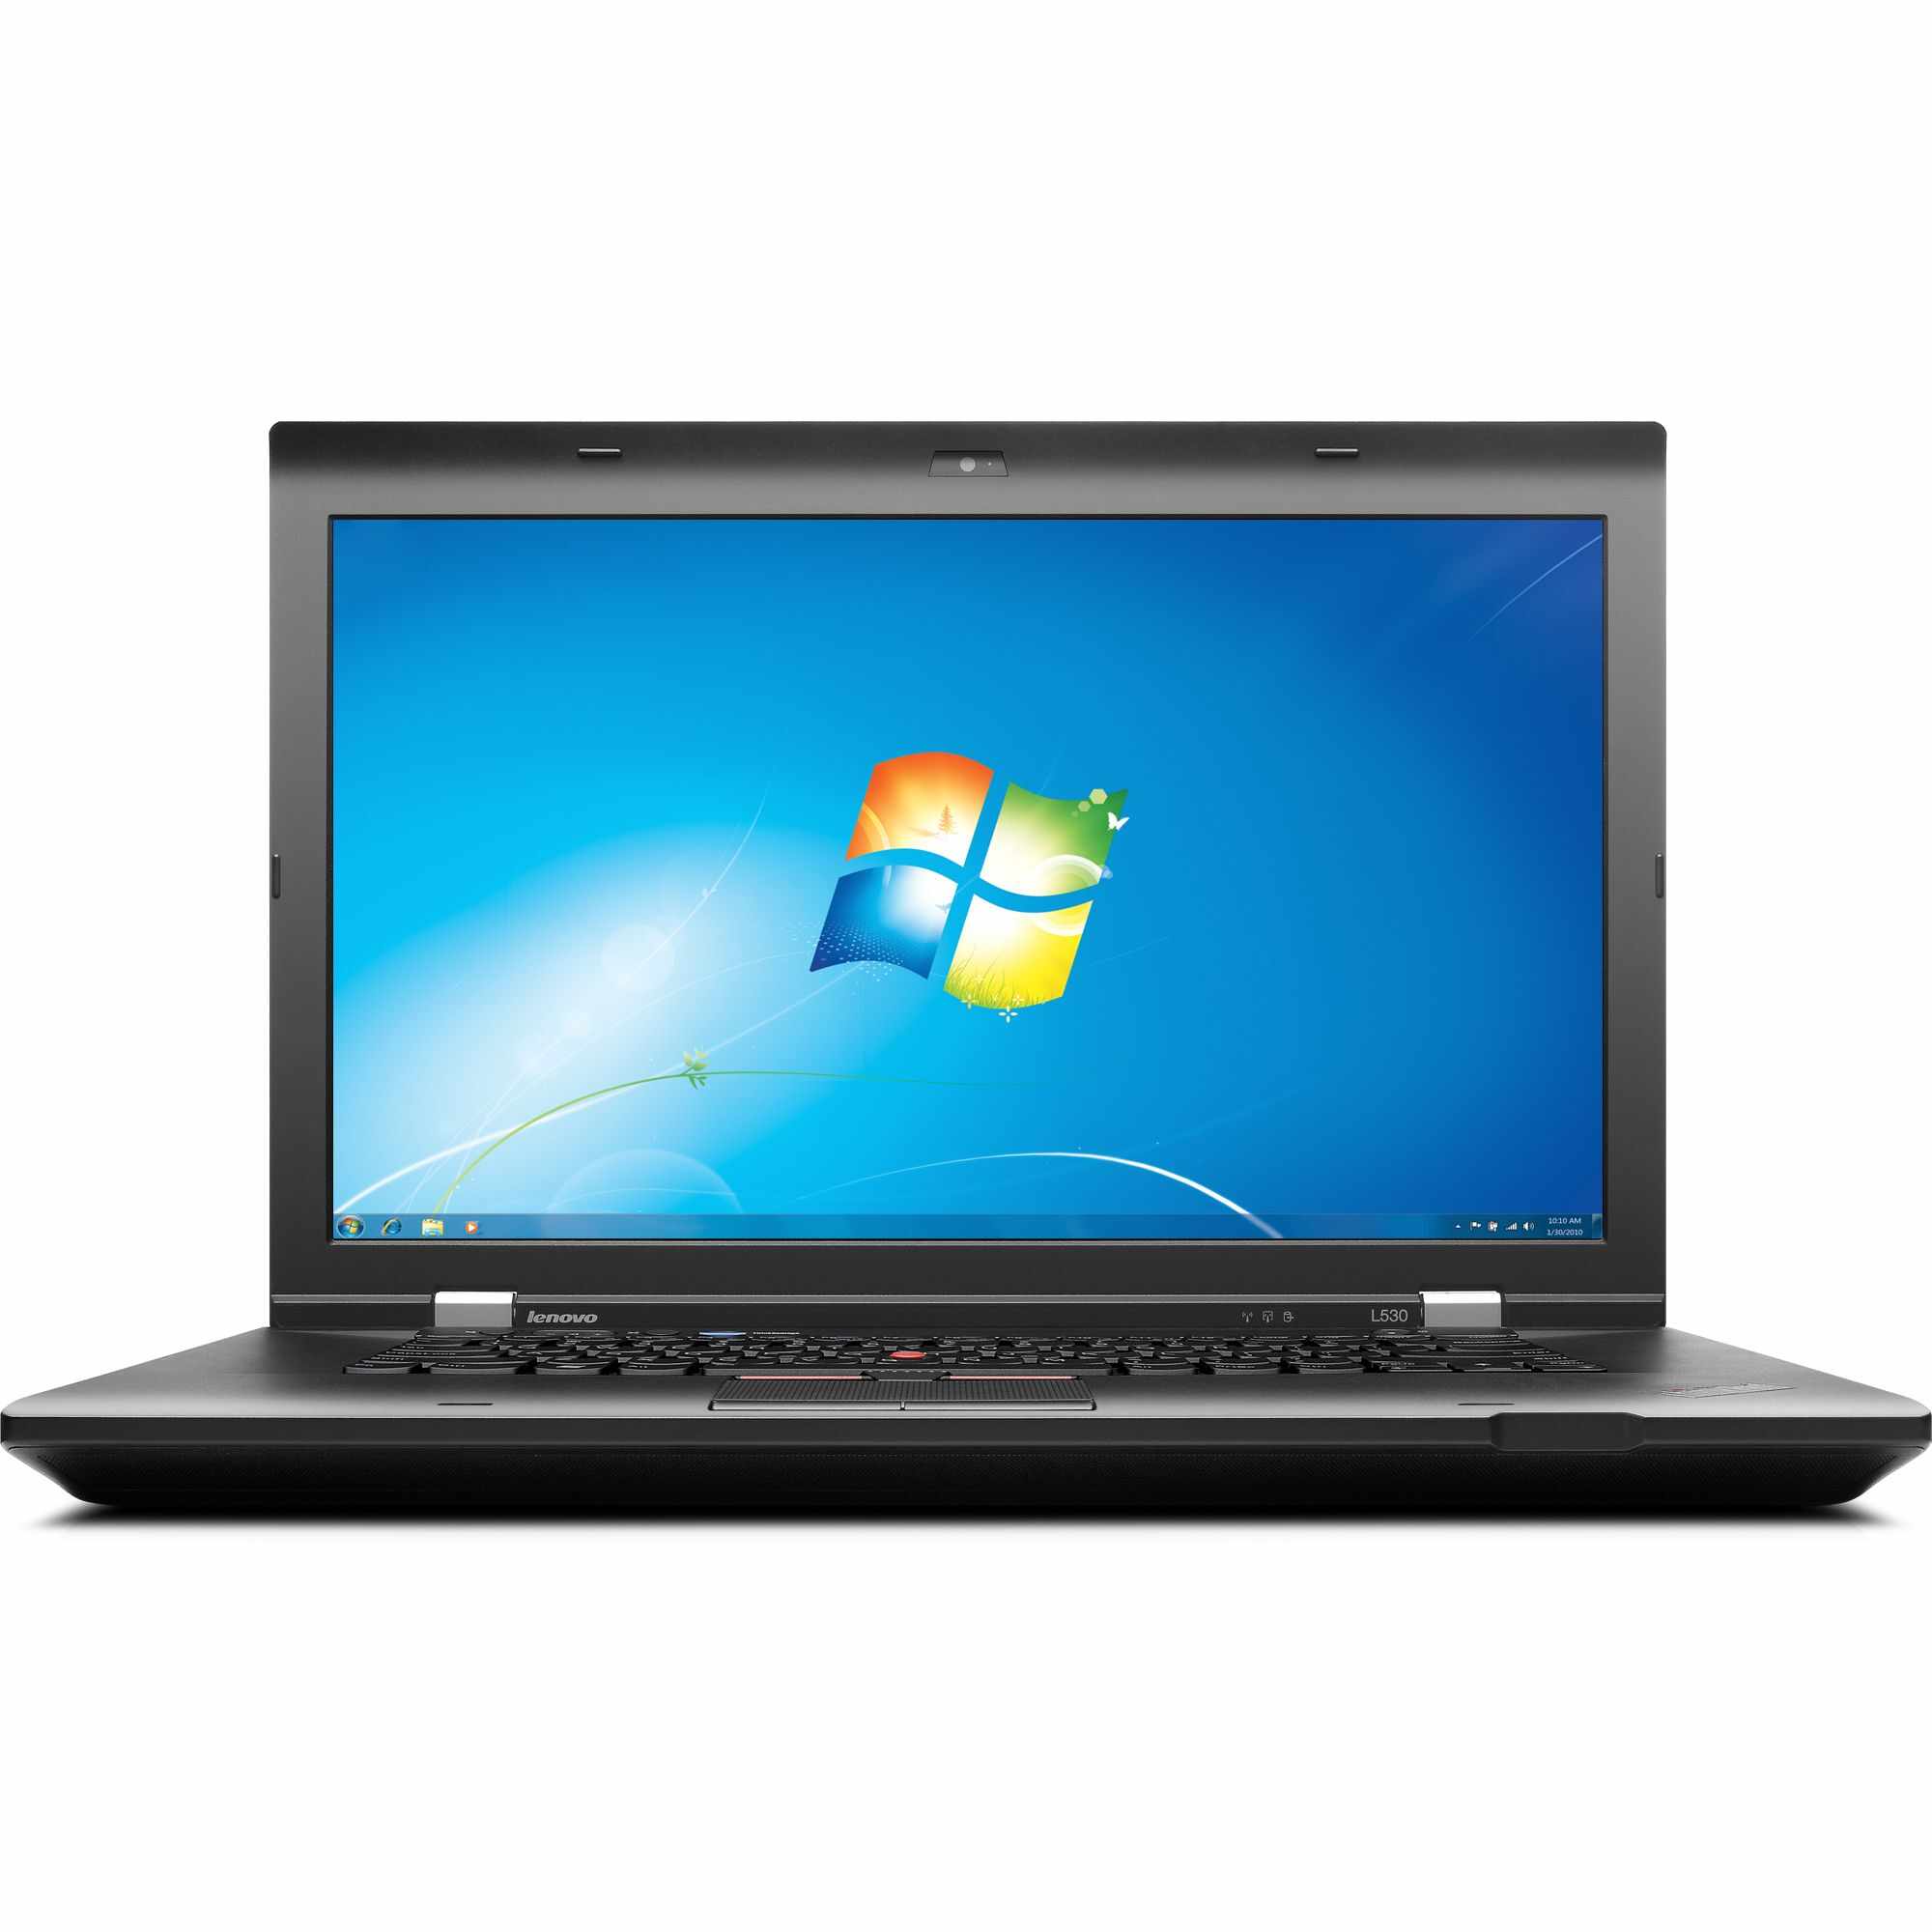 Laptop LENOVO ThinkPad L530, Intel Core i5-3230M 2.60GHz, 4GB DDR3, 120GB SSD, DVD-RW, 15.6 Inch, Webcam